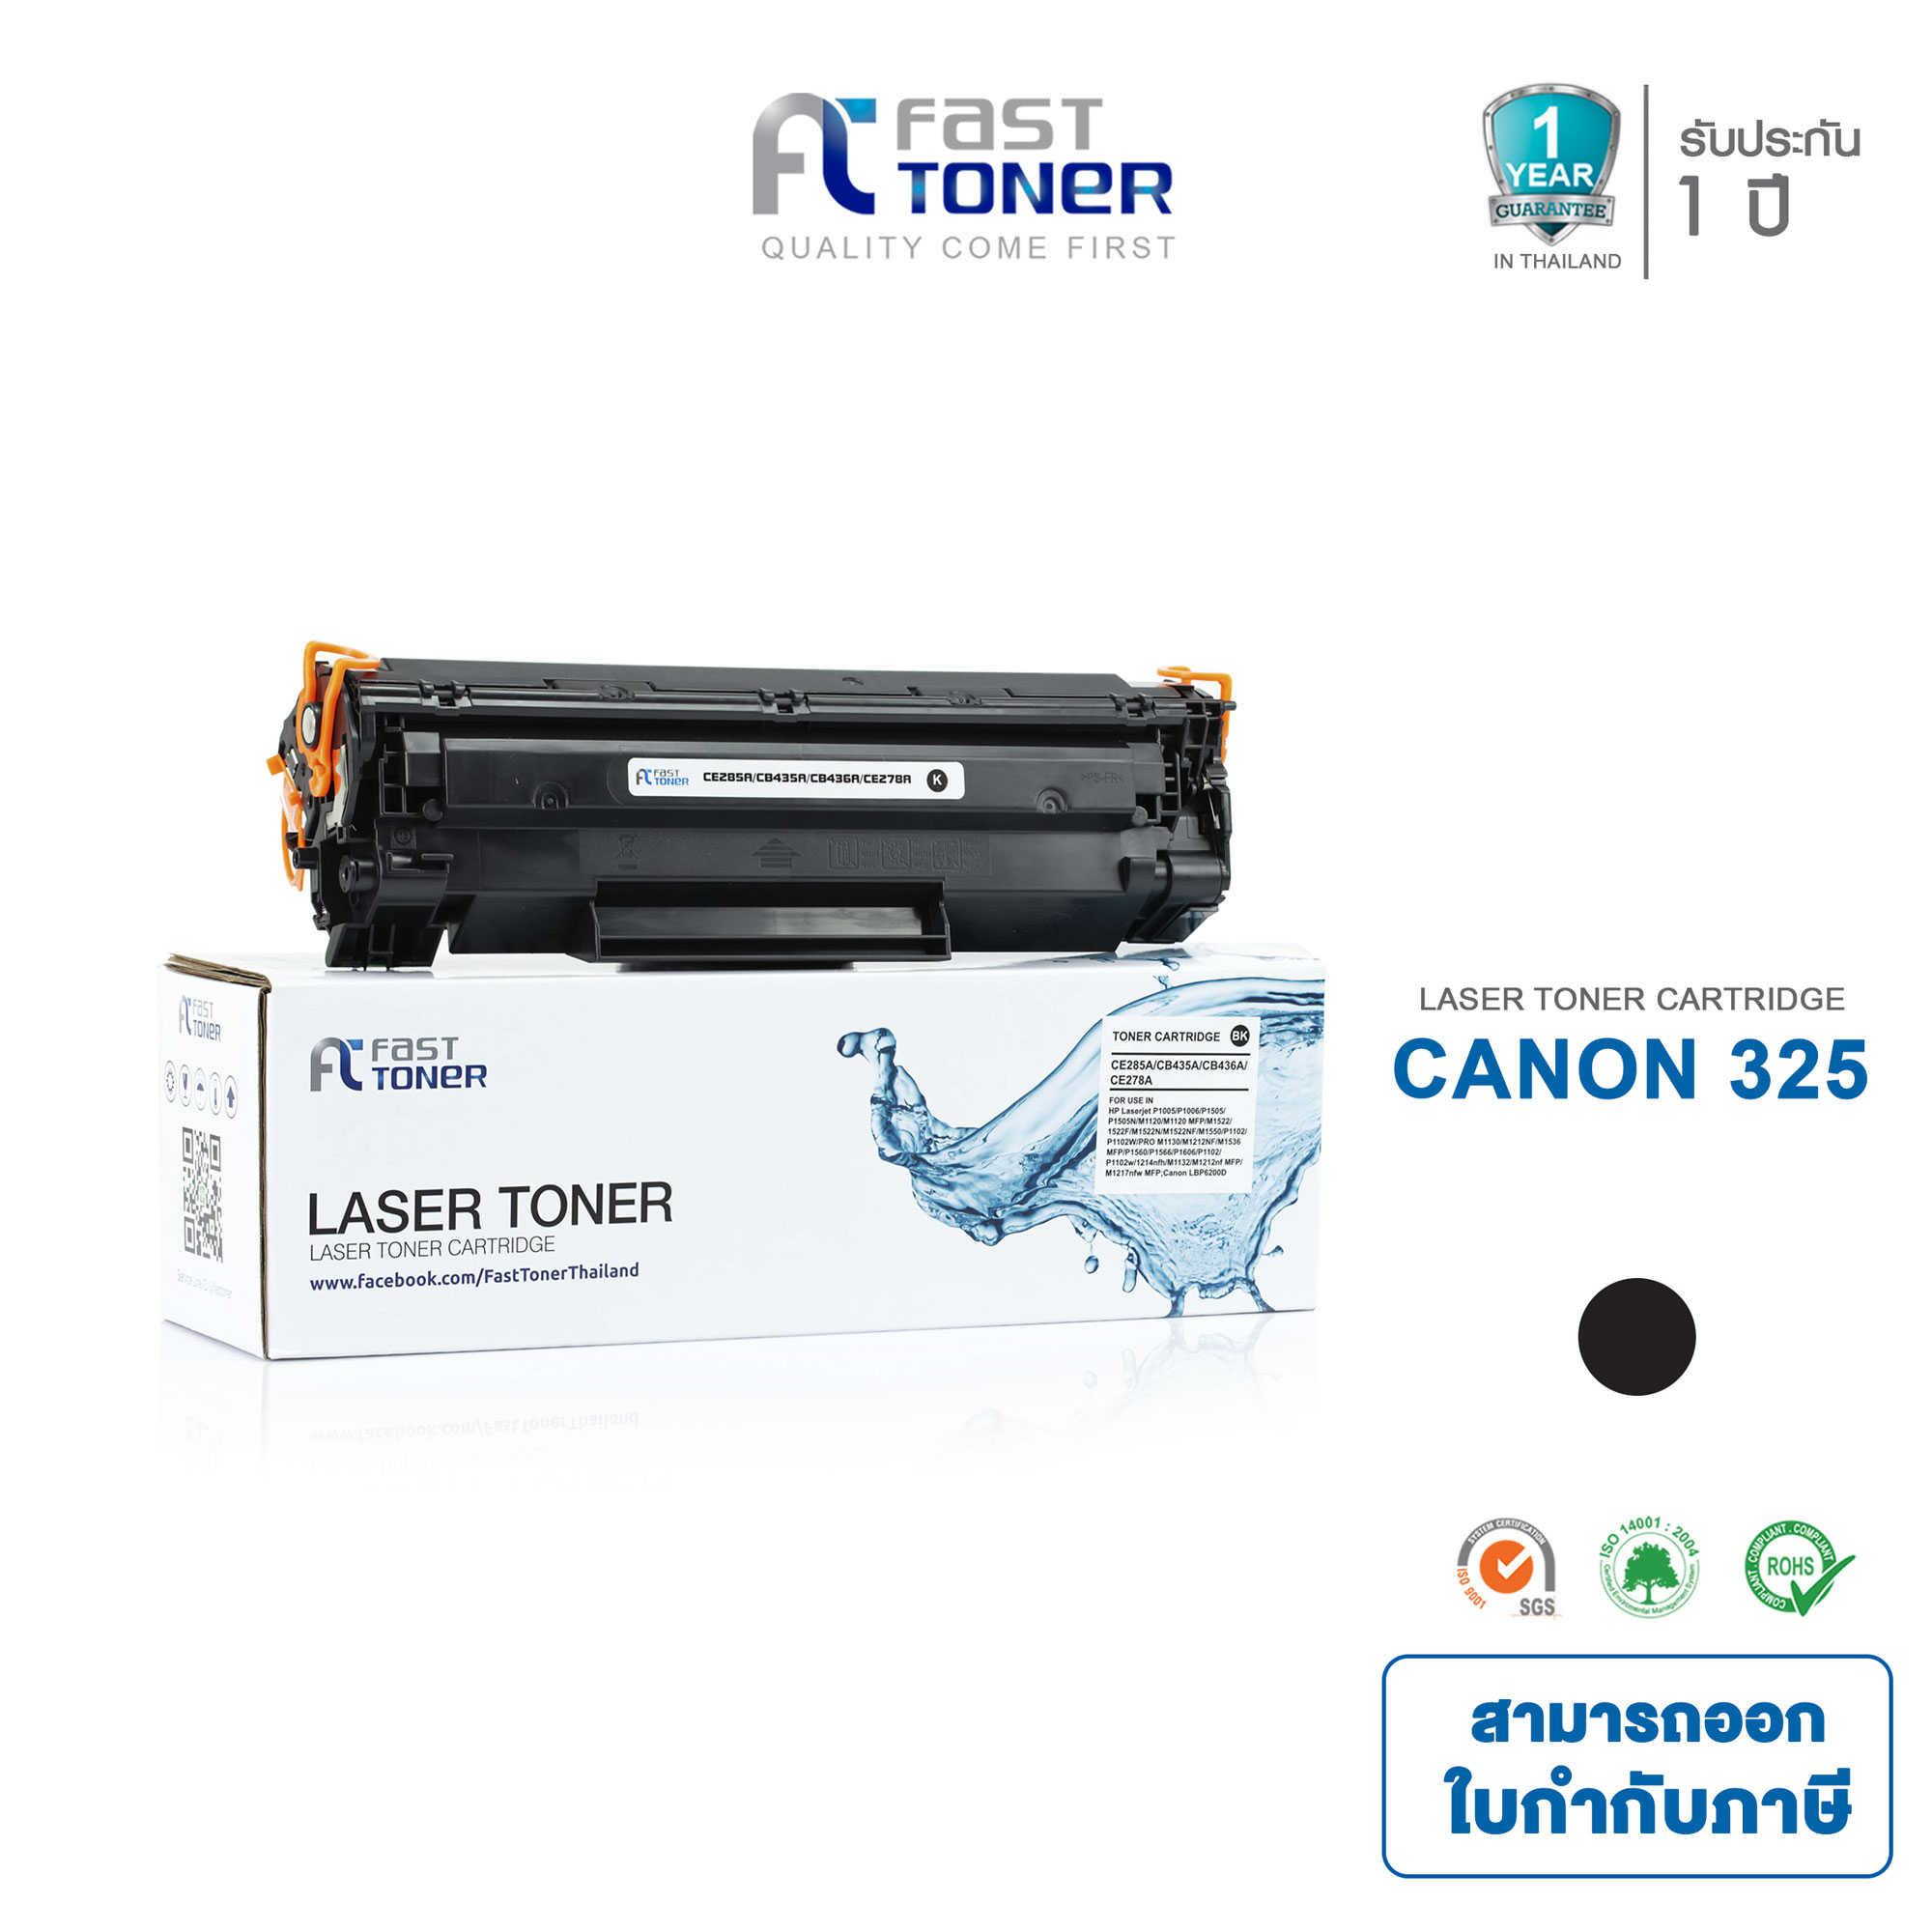 Fast Toner ตลับหมึกสำหรับรุ่น Canon 325 (BK) ใช้สำหรับเครื่อง Canon LBP6000 LBP6030 LBP6230d (L4)